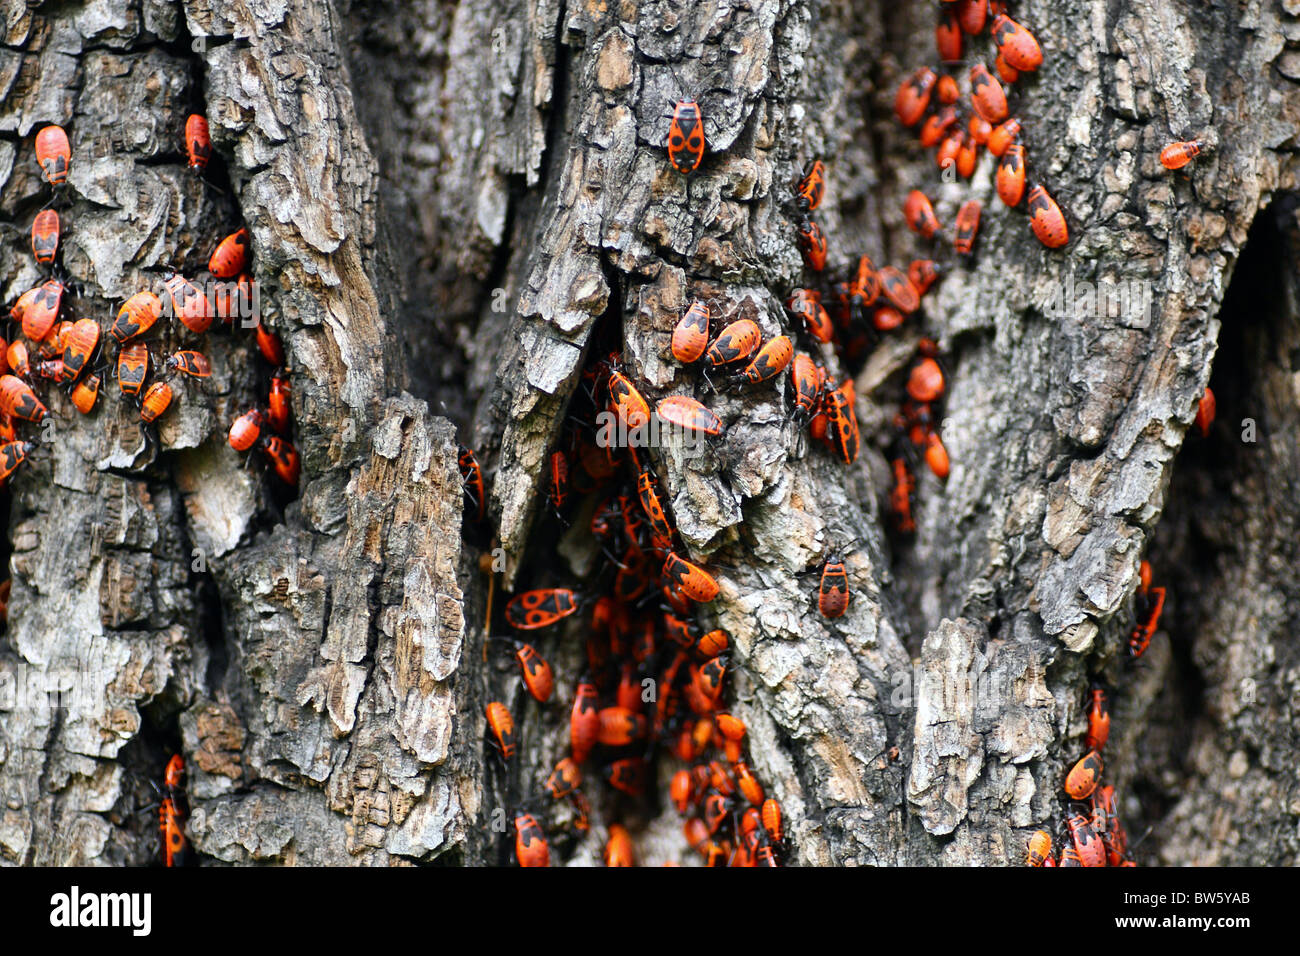 The firebug, Pyrrhocoris apterus. Stock Photo